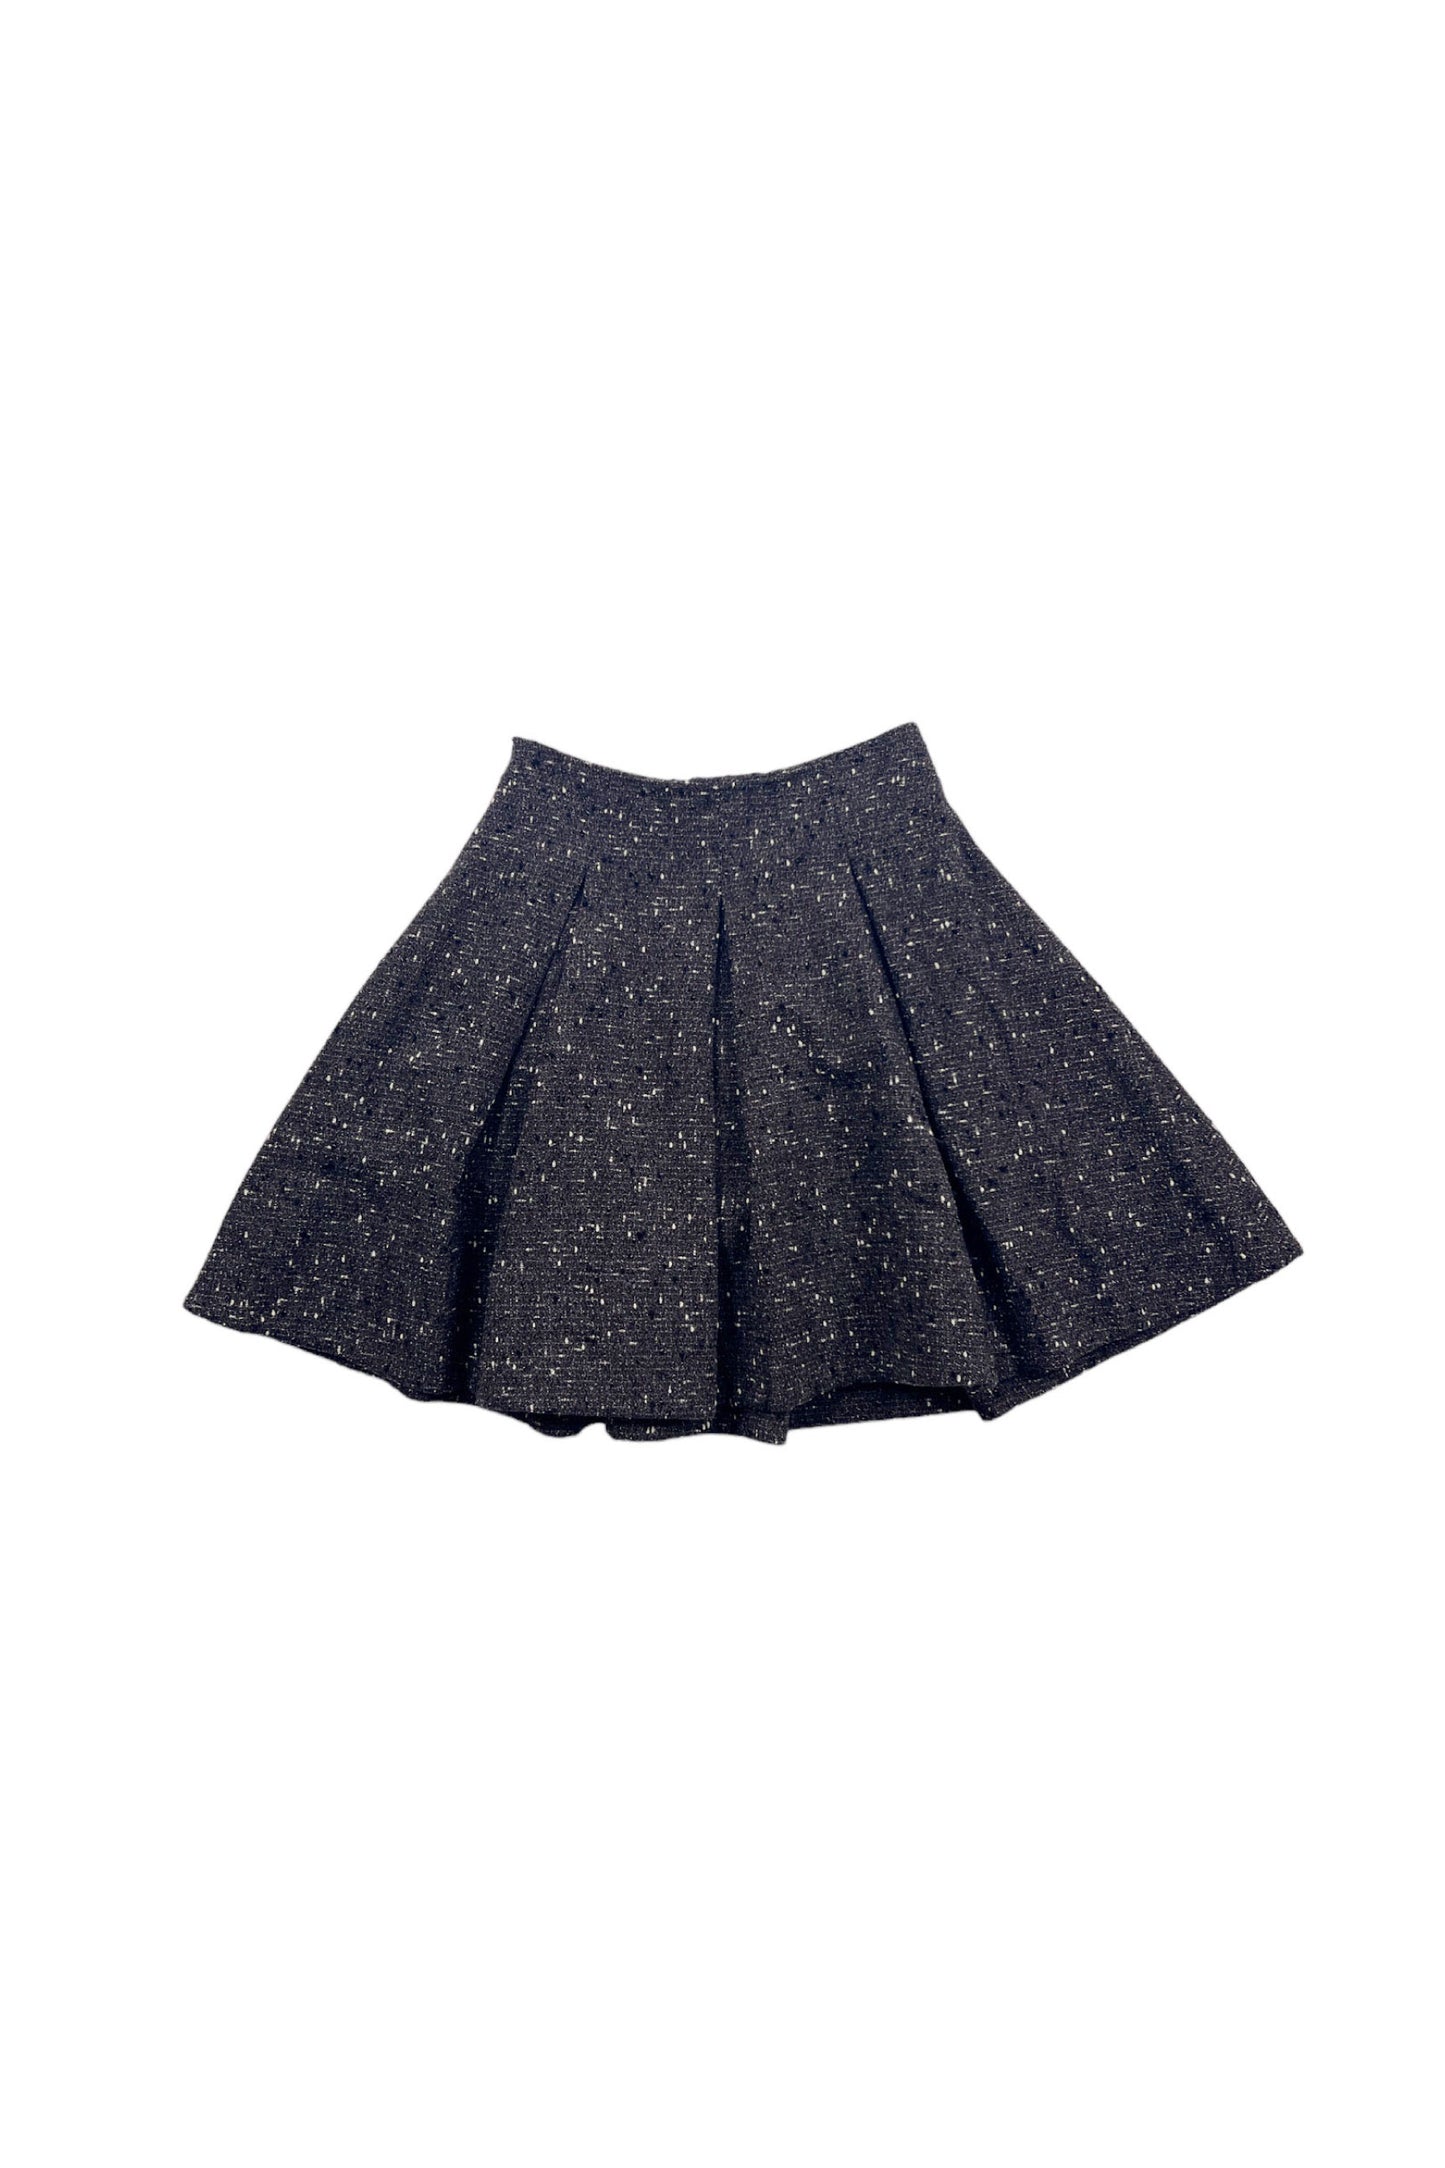 KENZO CLUB tweed skirt